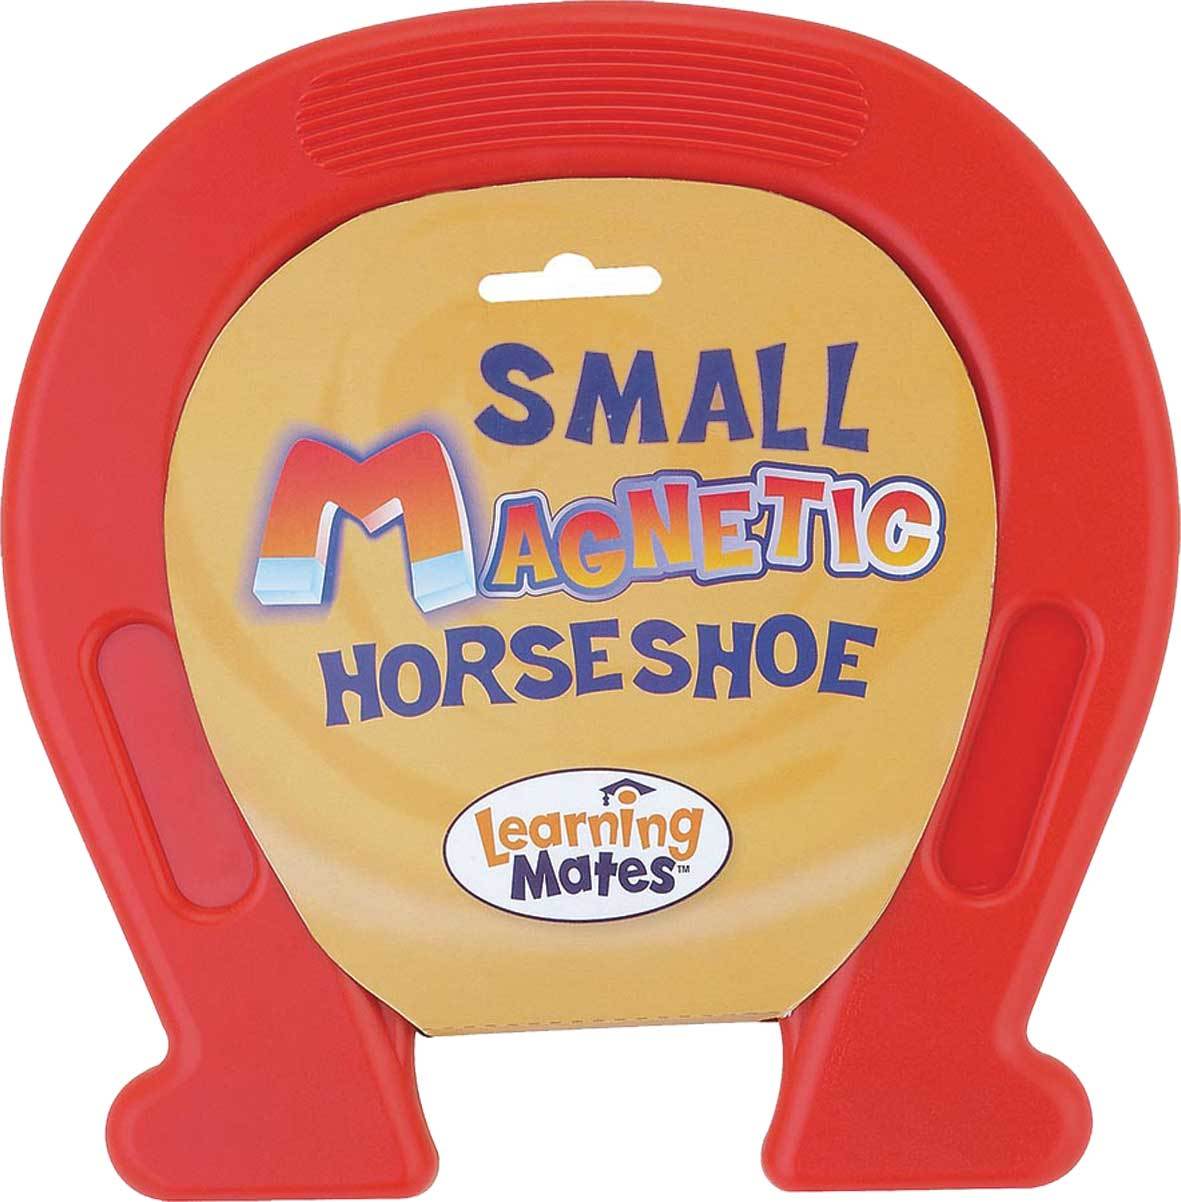 Learning Mates - Magnetic Horseshoe Small